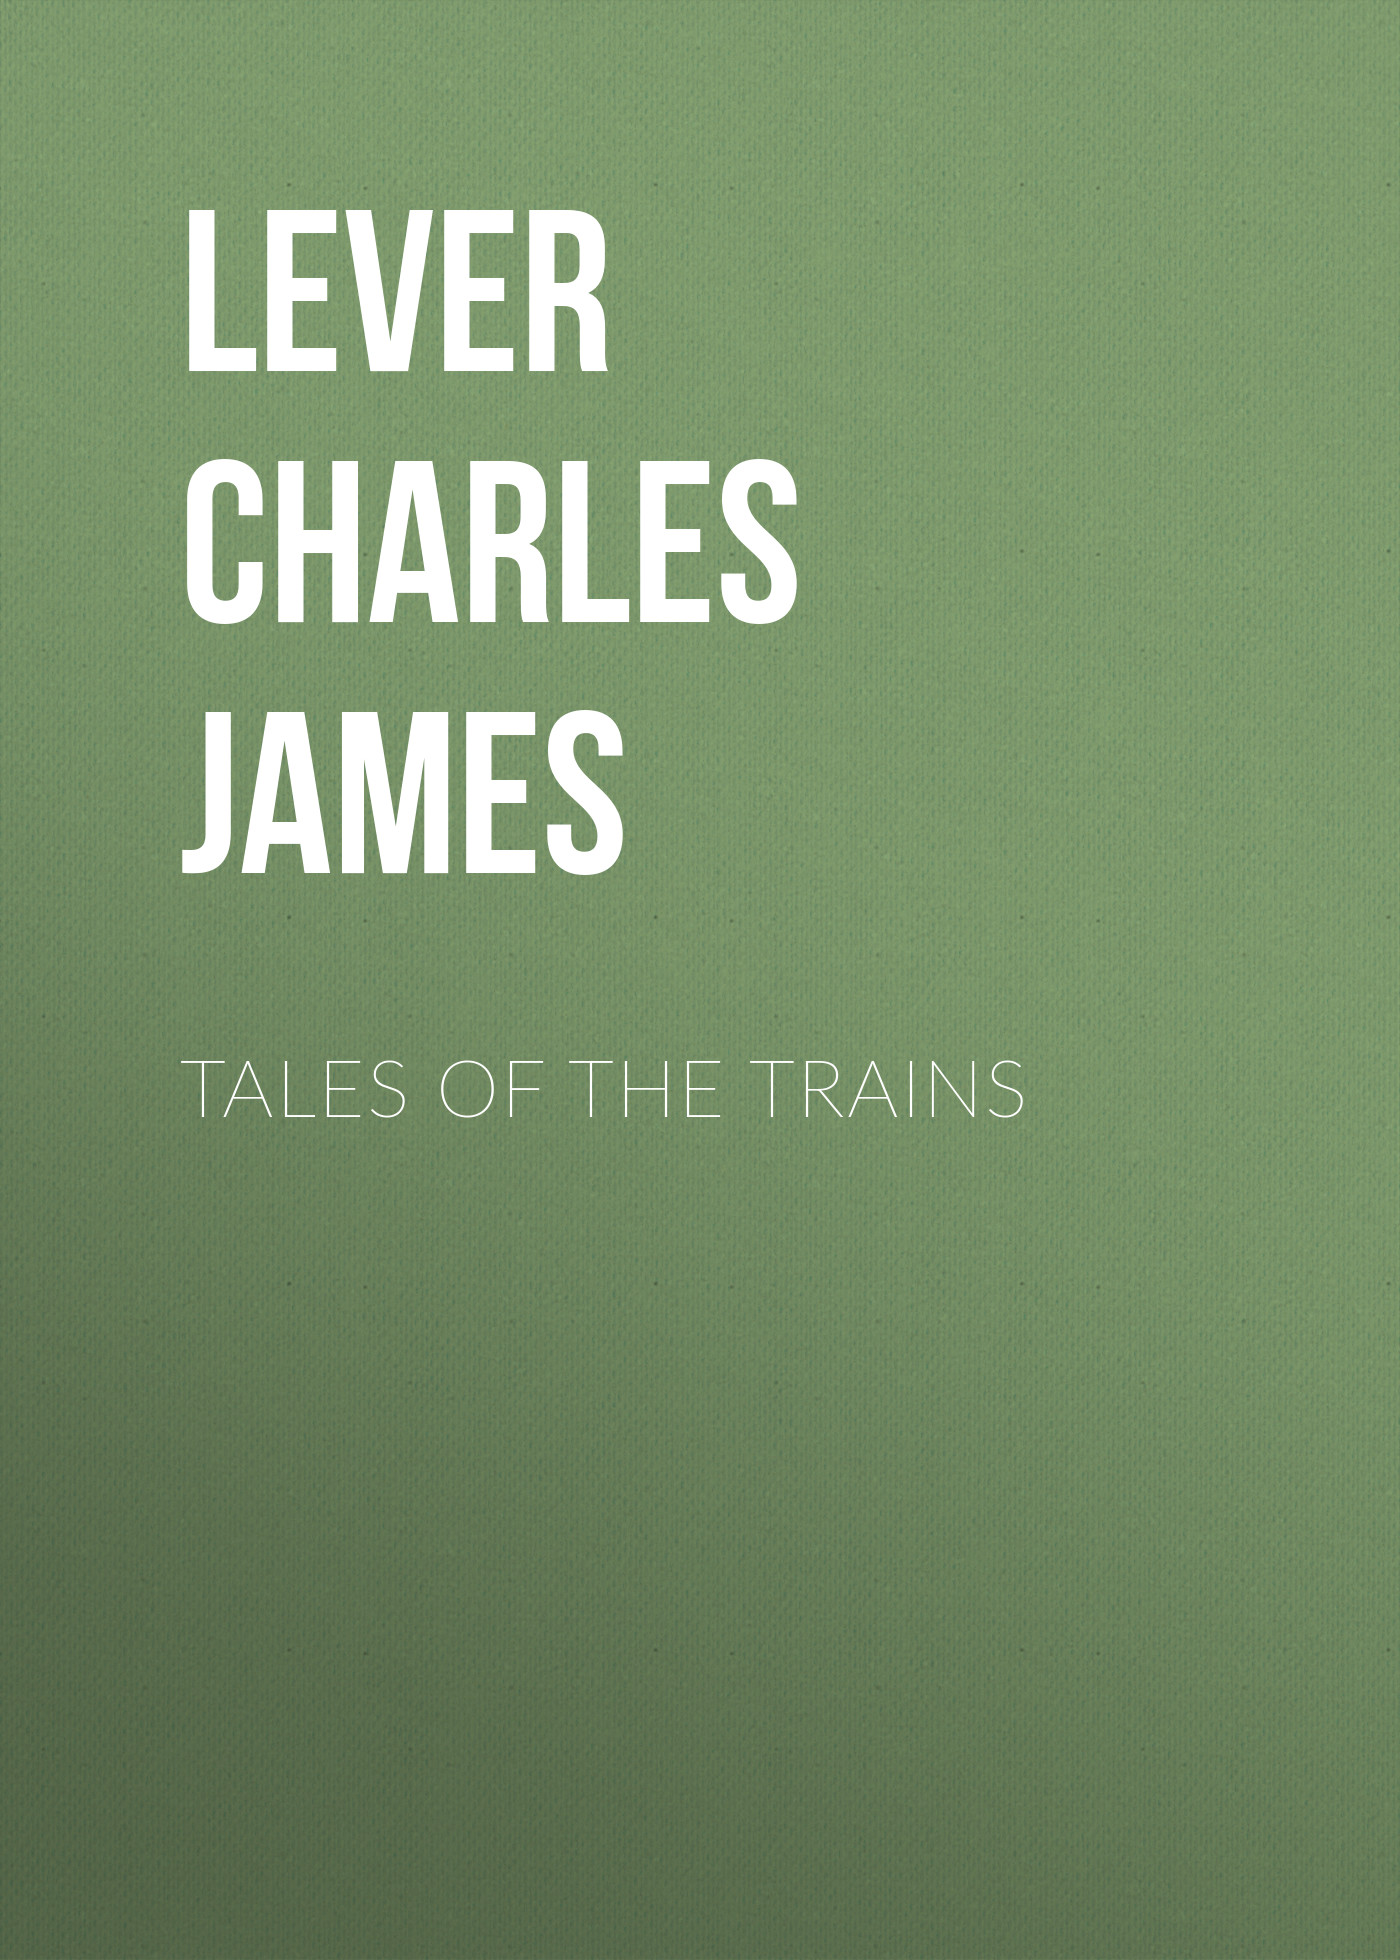 Книга Tales of the Trains из серии , созданная Charles Lever, может относится к жанру Литература 19 века, Зарубежная старинная литература, Зарубежная классика. Стоимость электронной книги Tales of the Trains с идентификатором 25449356 составляет 0 руб.